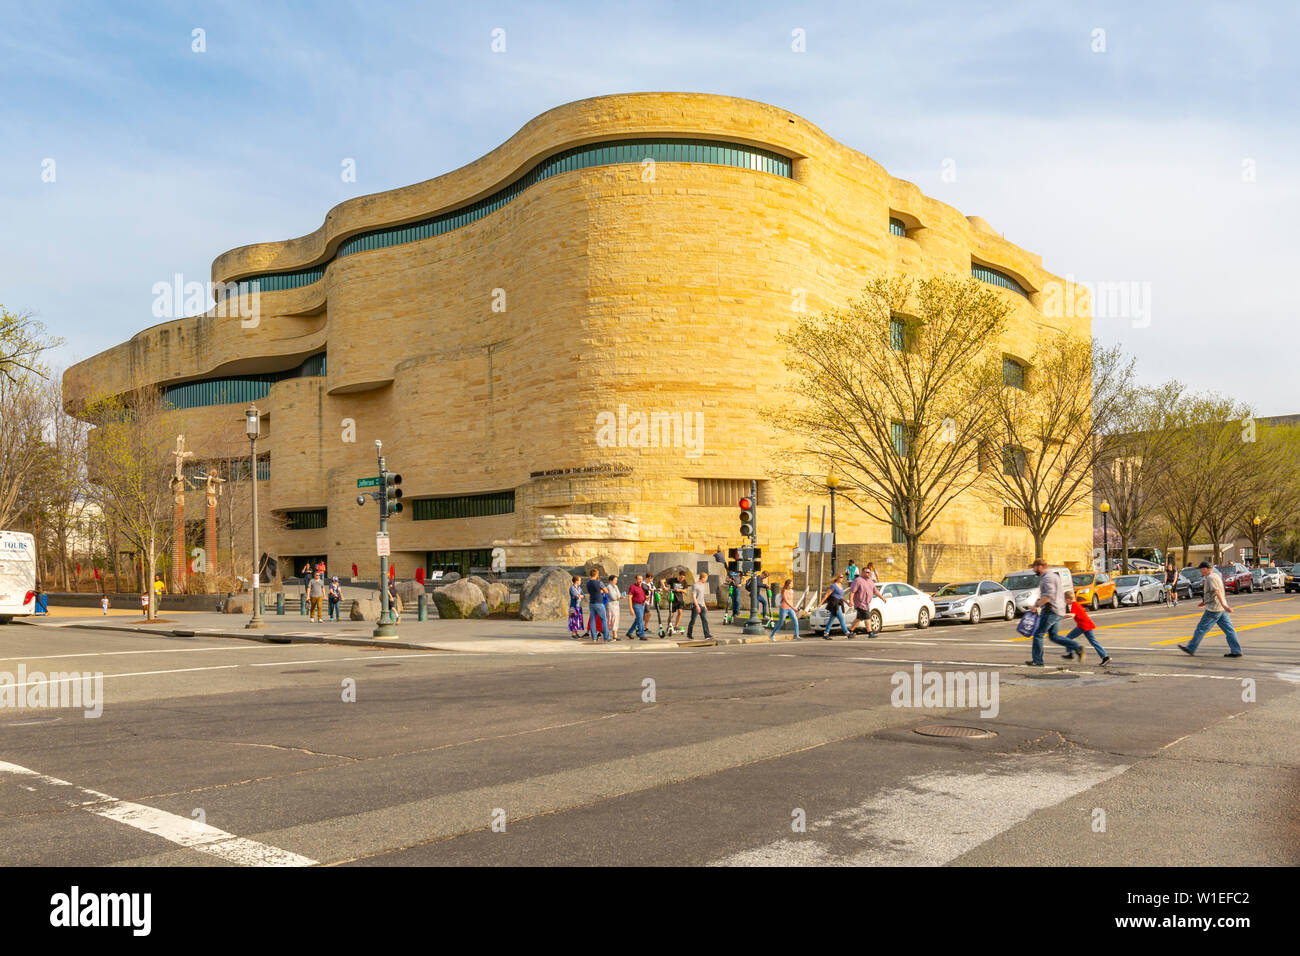 Ansicht des nationalen Museums der amerikanischen Indianer, Washington D.C., Vereinigte Staaten von Amerika, Nordamerika Stockfoto